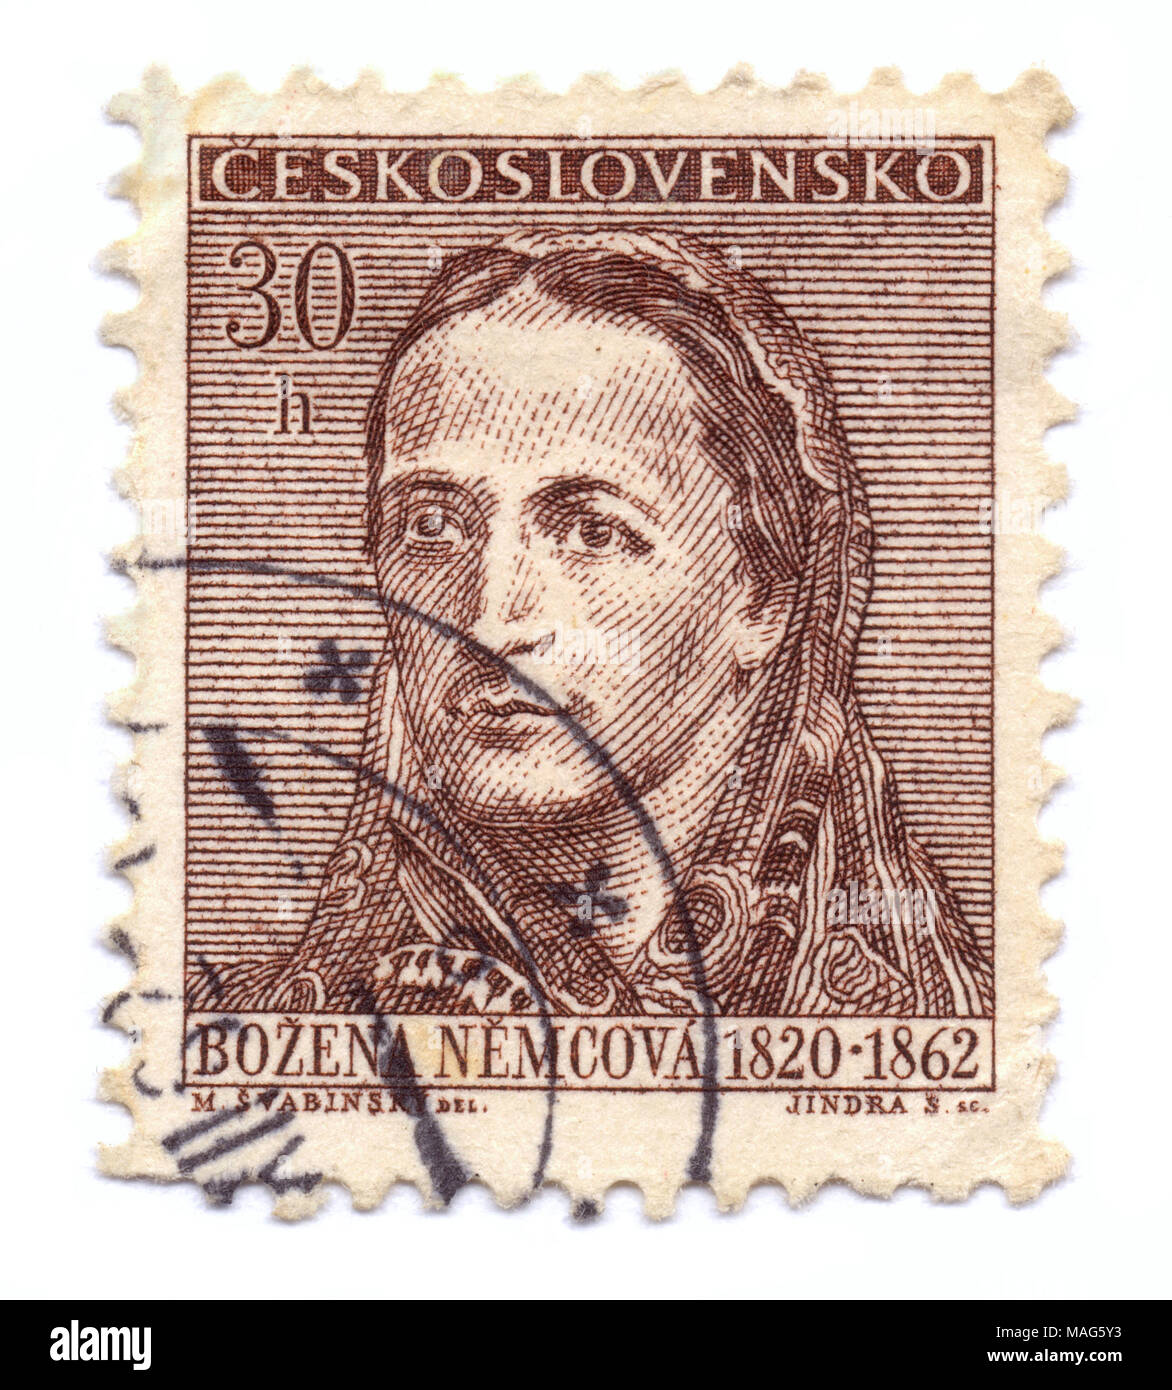 Stamp - portrait de Bozena Nemcova, écrivain tchèque préféré (contes, roman grand-mère), imprimé à Prague, en Tchécoslovaquie (aujourd'hui République Tchèque) Banque D'Images